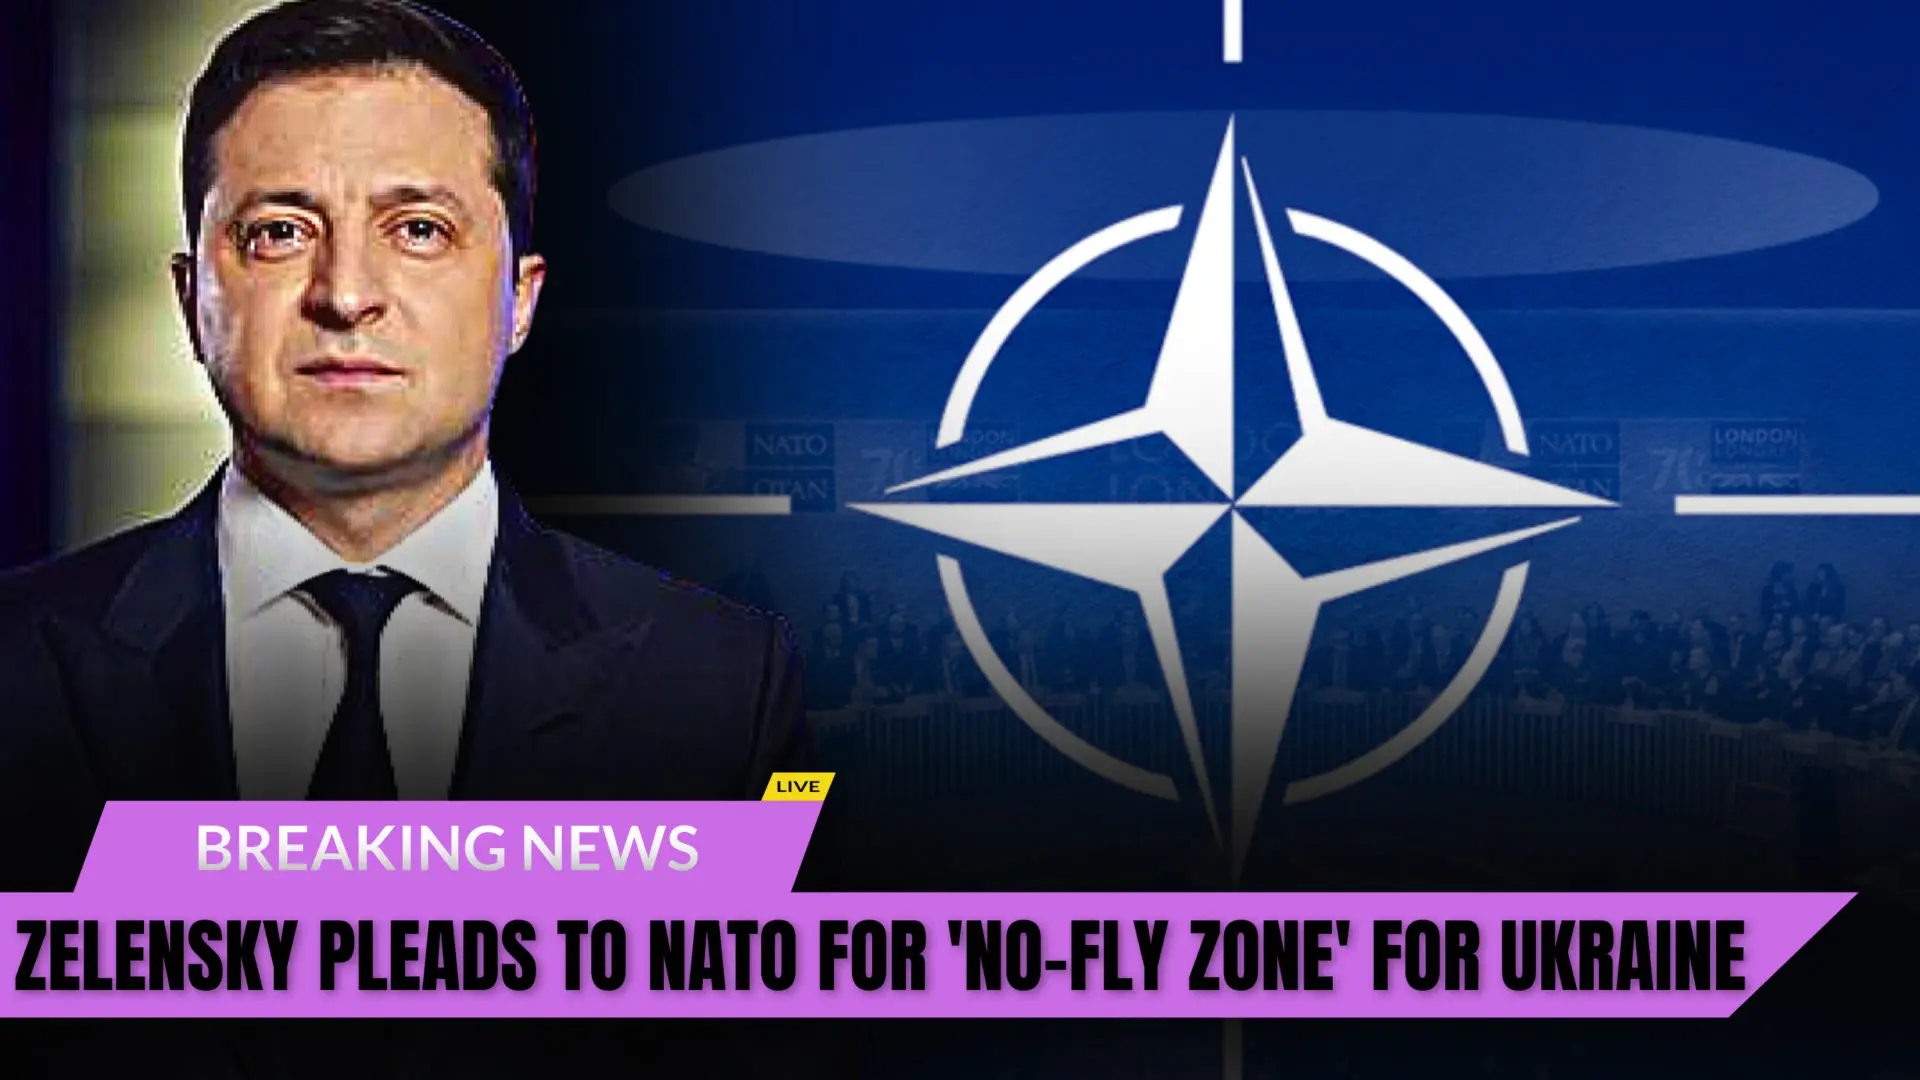 President Zelensky tells NATO